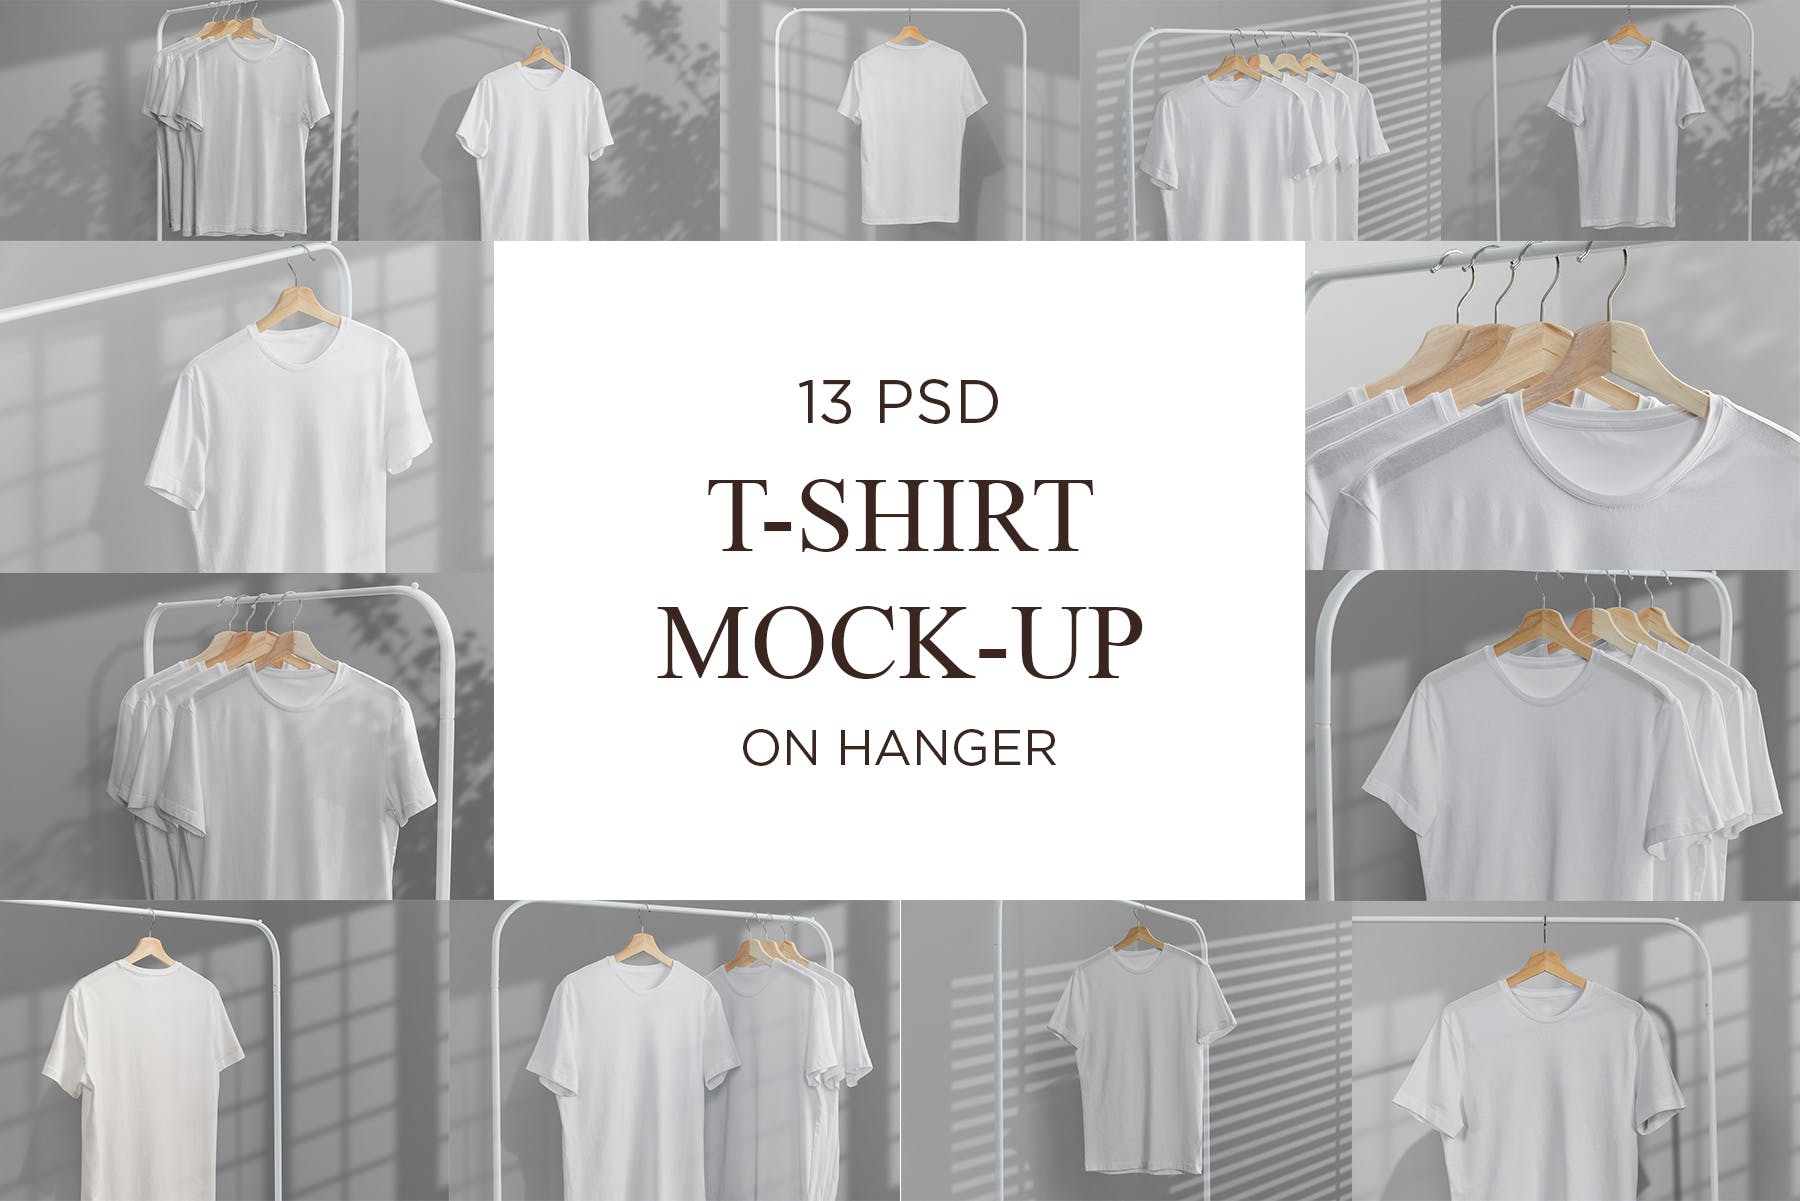 简易晾衣架T恤设计效果图样机16图库精选 T-Shirt Mock-Up on Hanger插图(8)